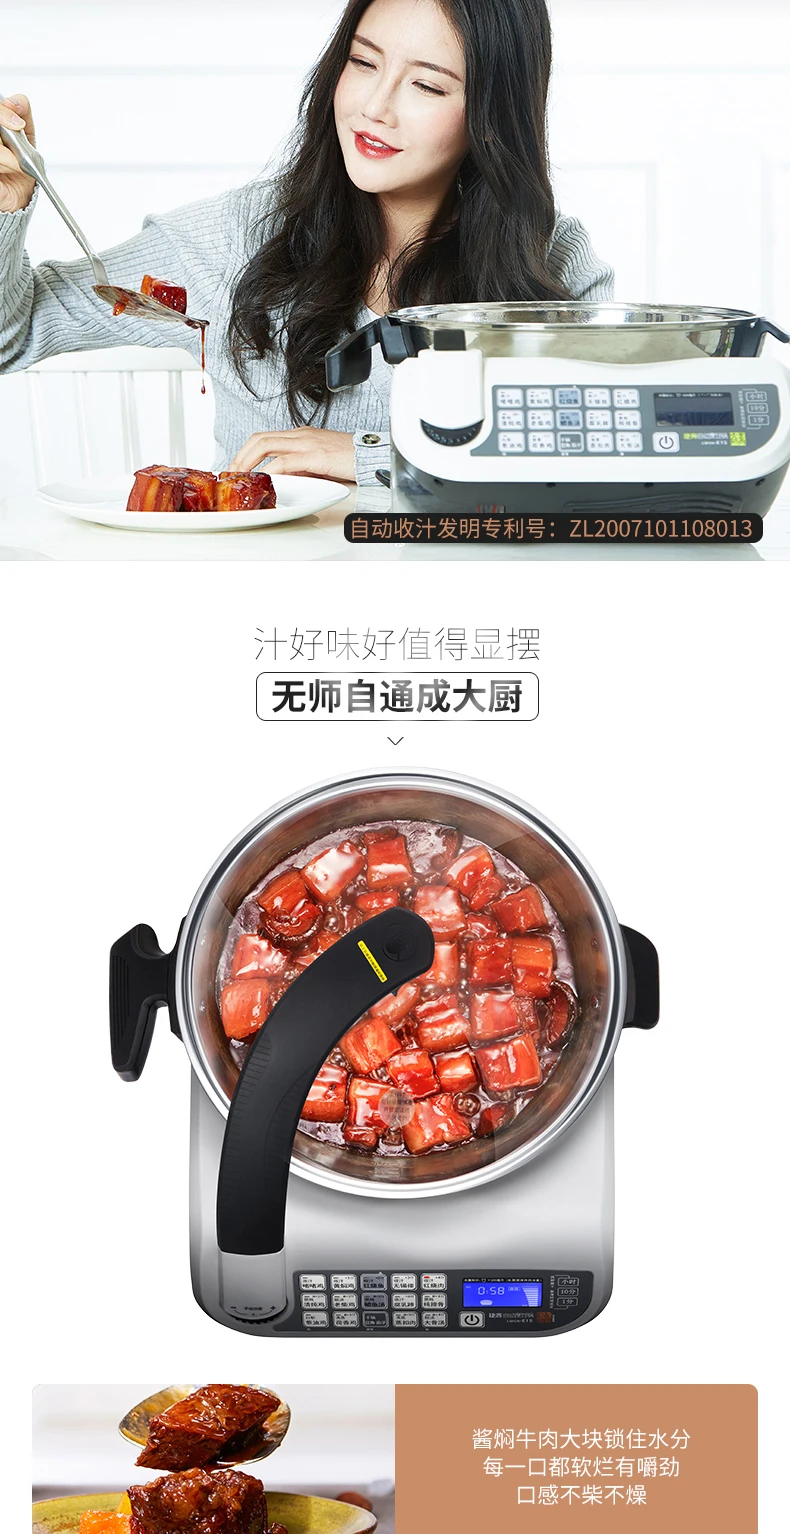 LWOK-E15 автоматическая машина для приготовления пищи, автоматический умный ВОК, робот для приготовления пищи дома, ленивый ВОК